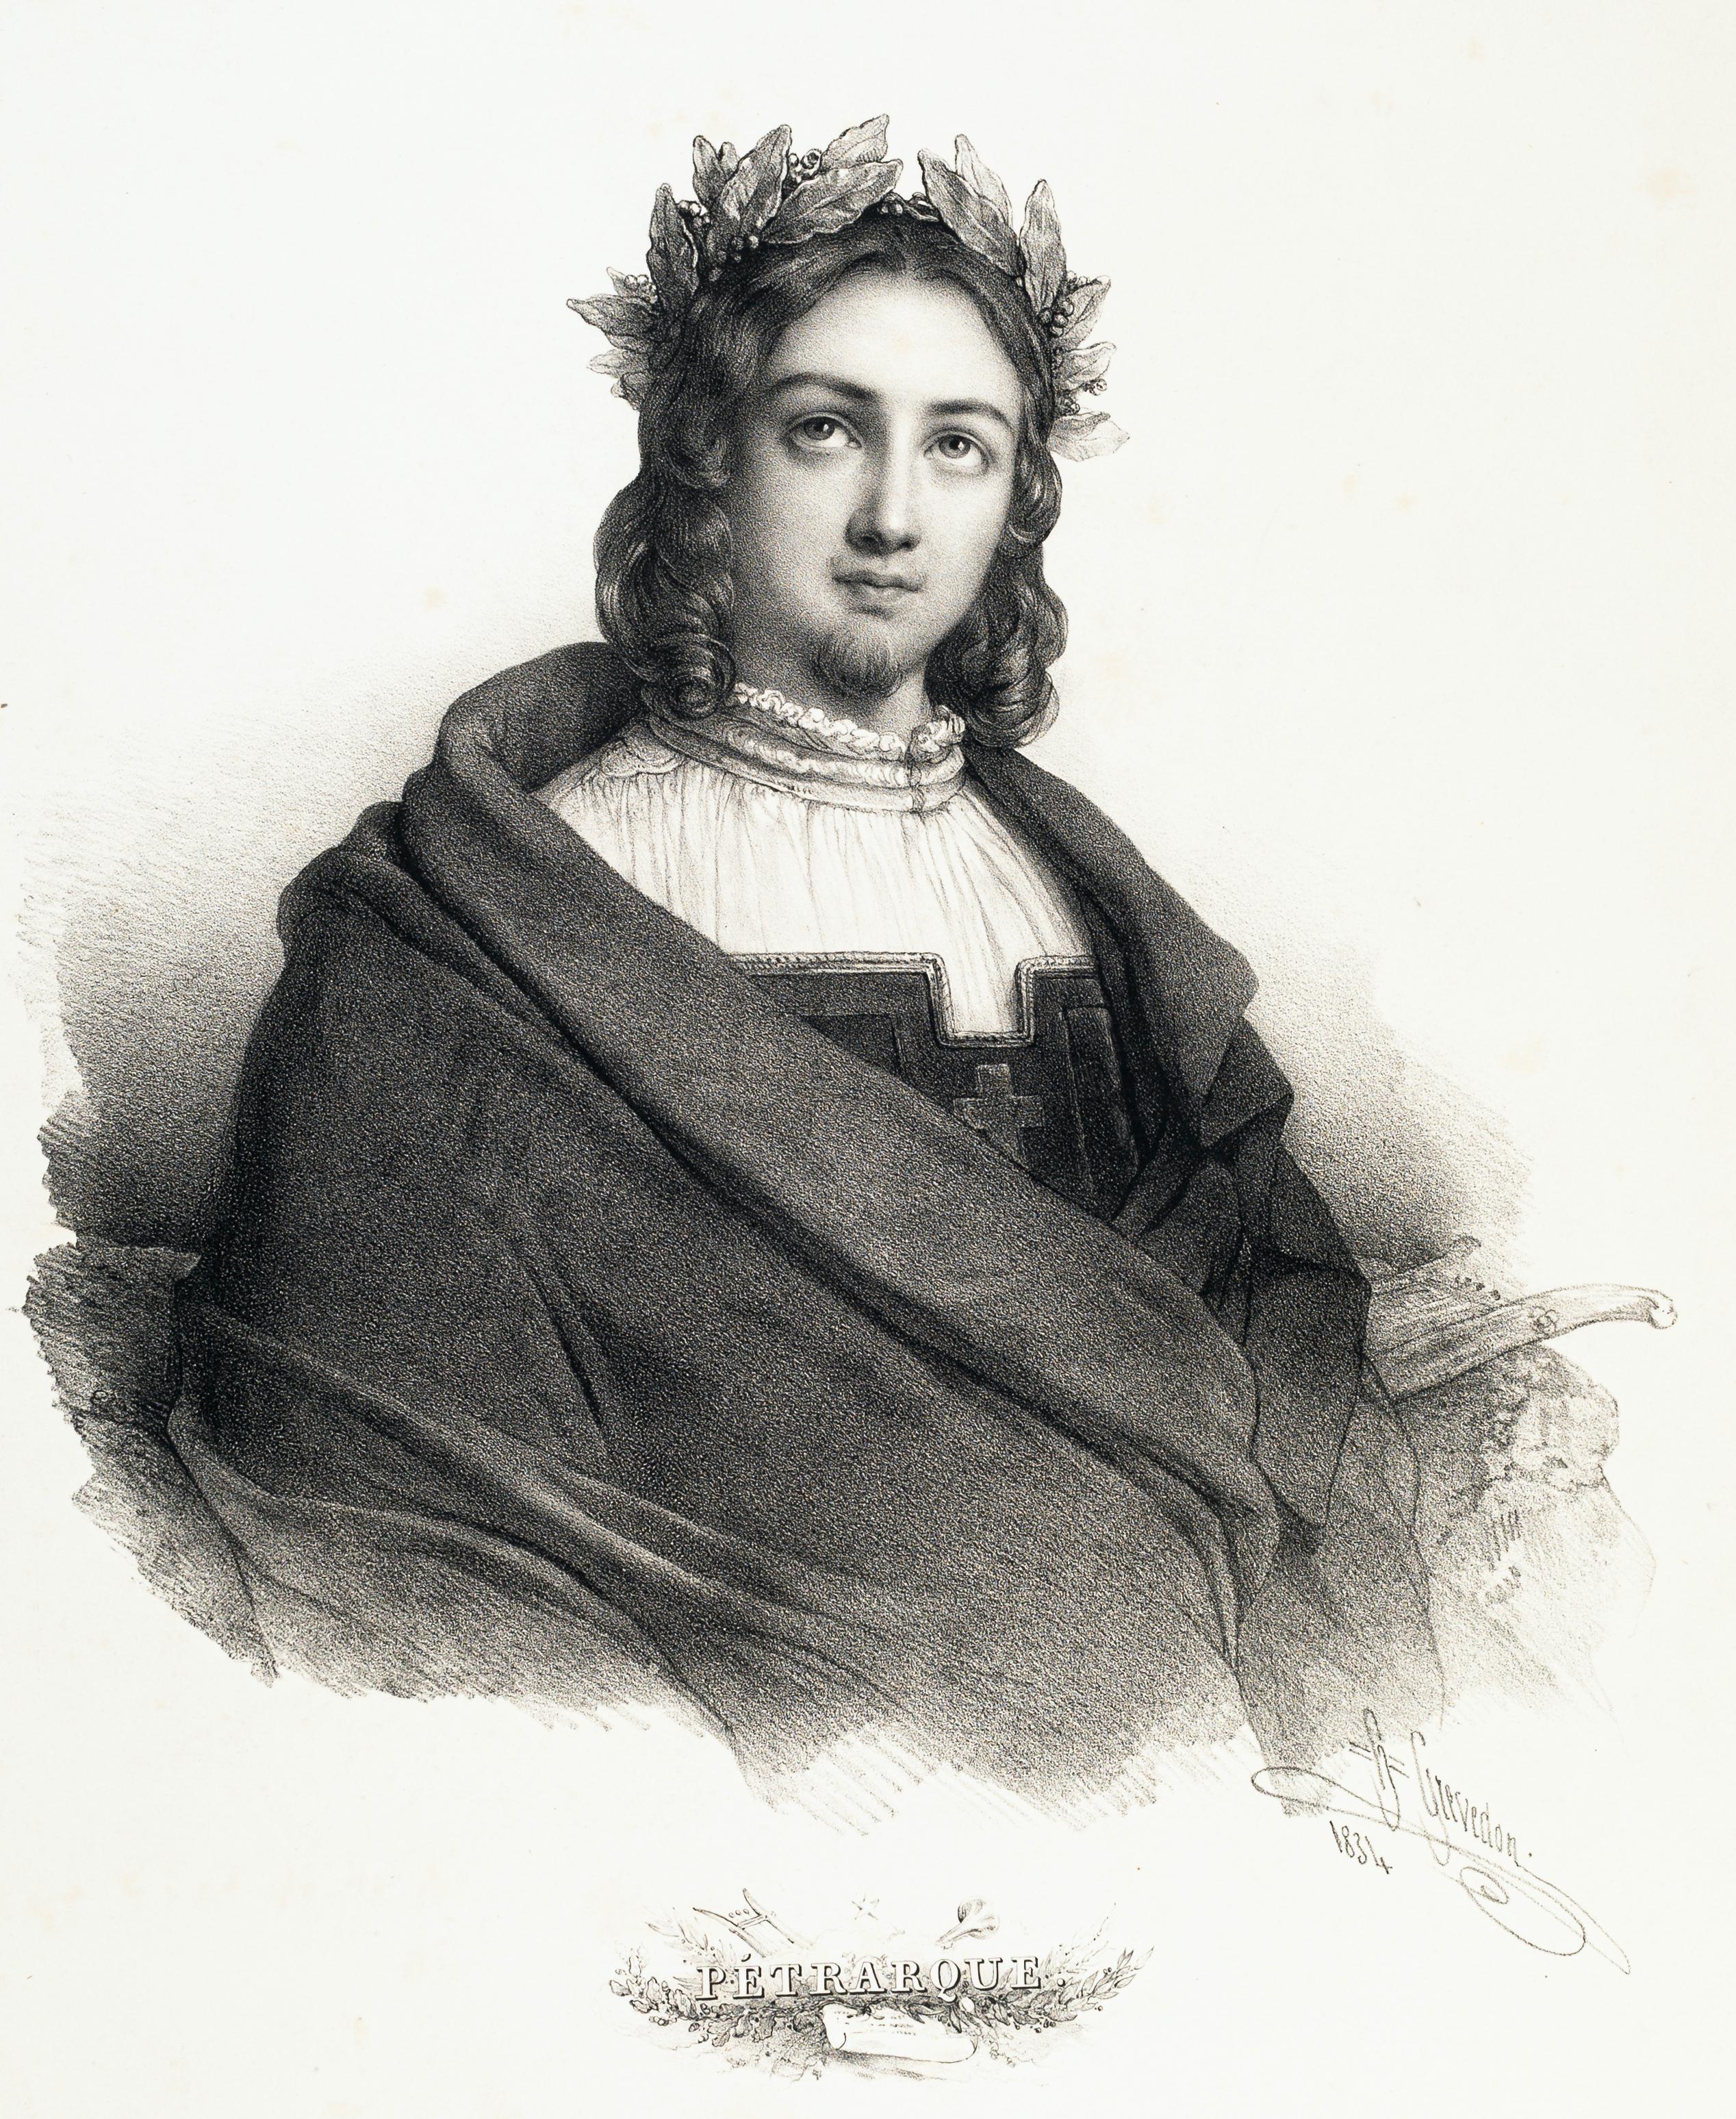 Henri Grevedon Portrait Print - Portrait of Francesco Petrarca - Lithograph by H. Grevedon - 1834